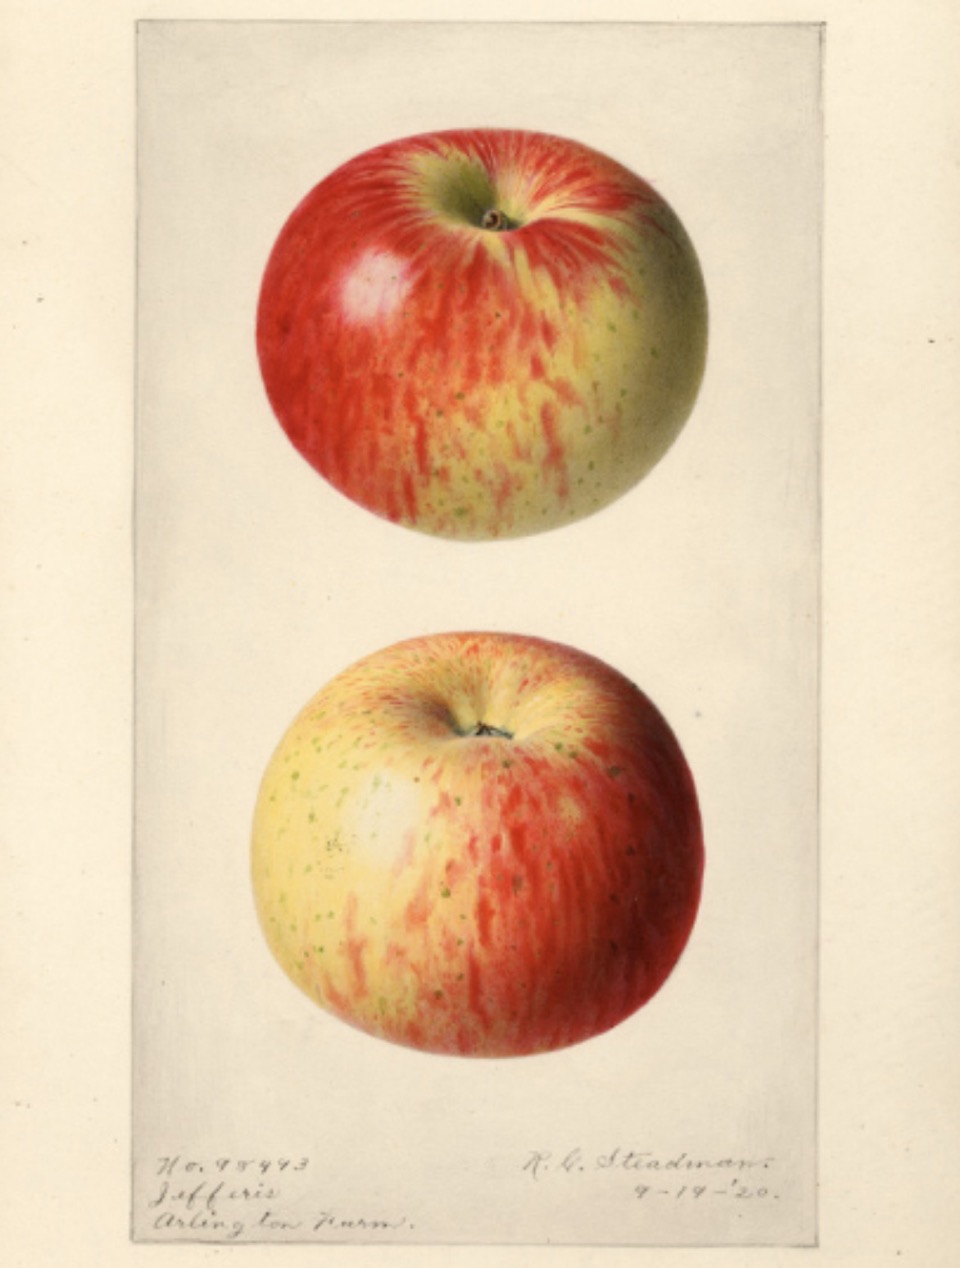 Historische Abbildung eines gelblich-rötlichen Apfels aus zwei Ansichten; USDA